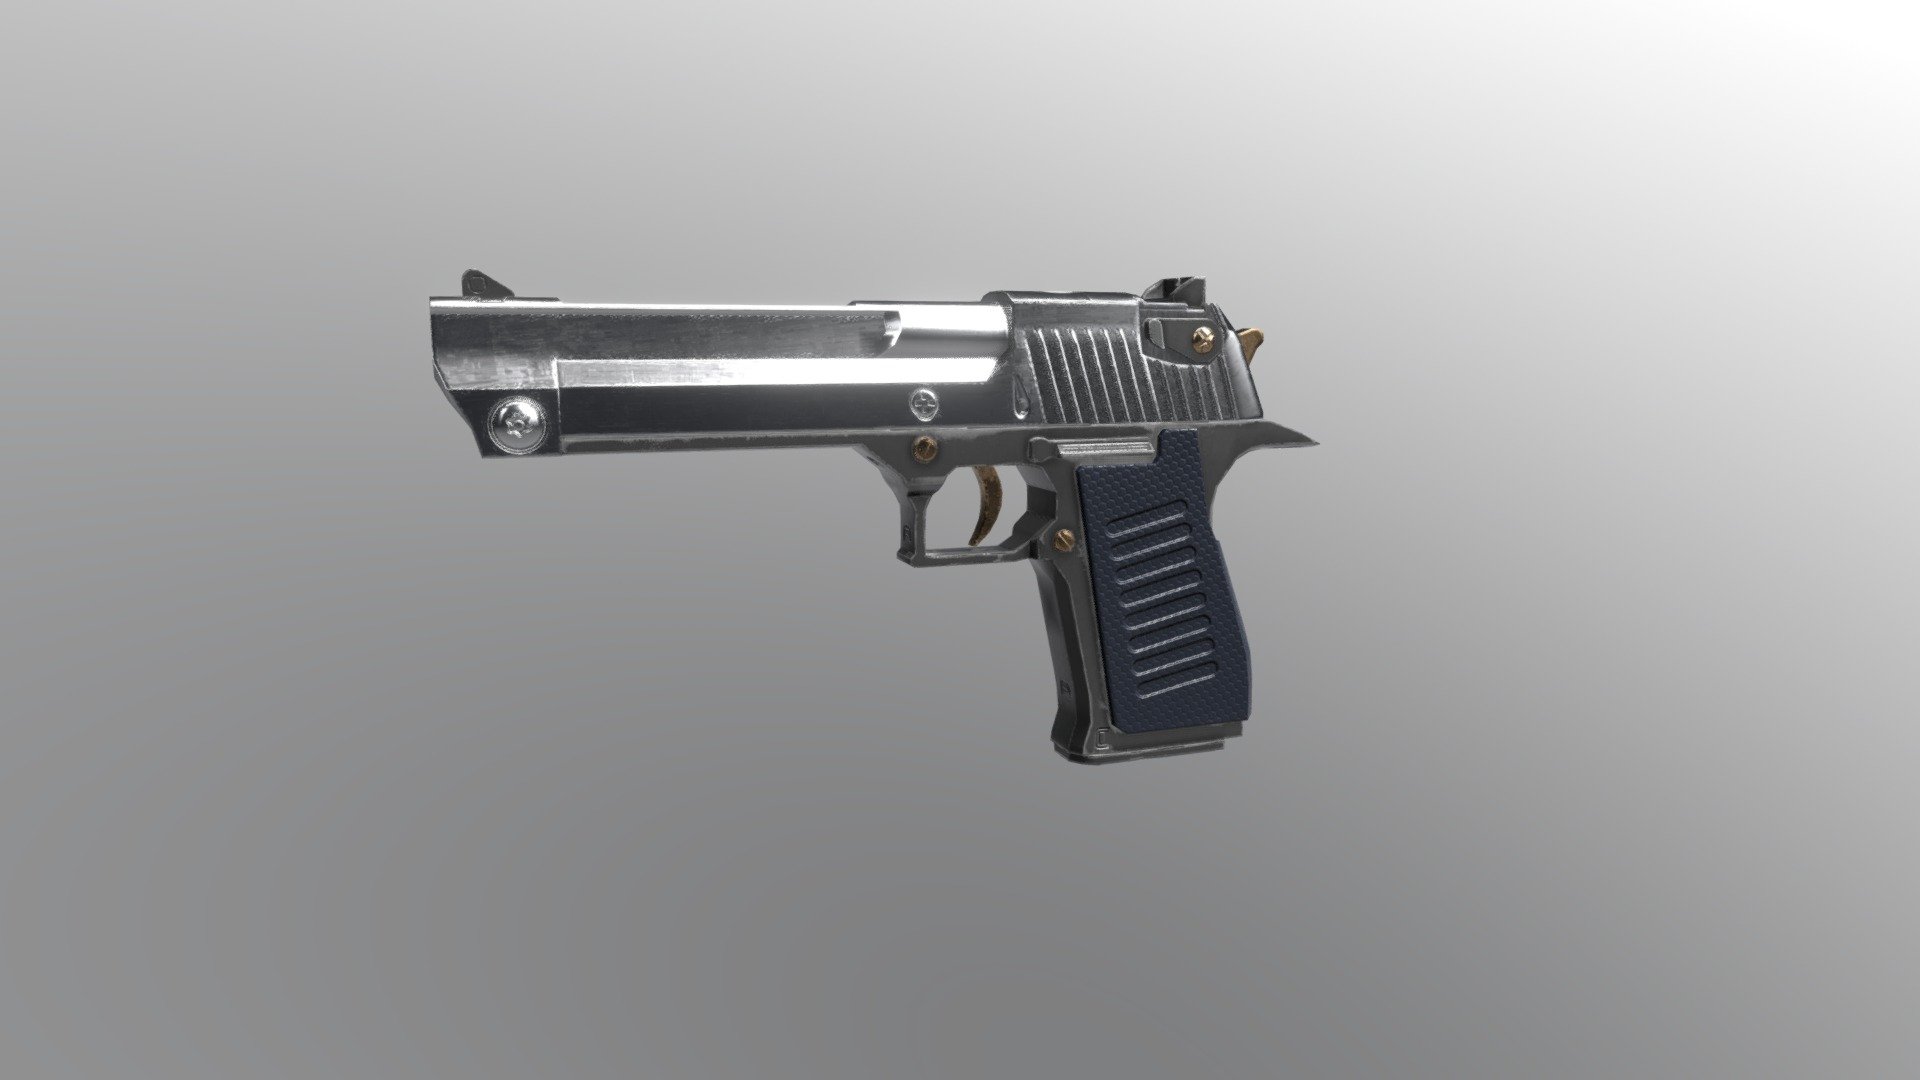 Pistol gun look like Desert Eagle make from blender 3d model